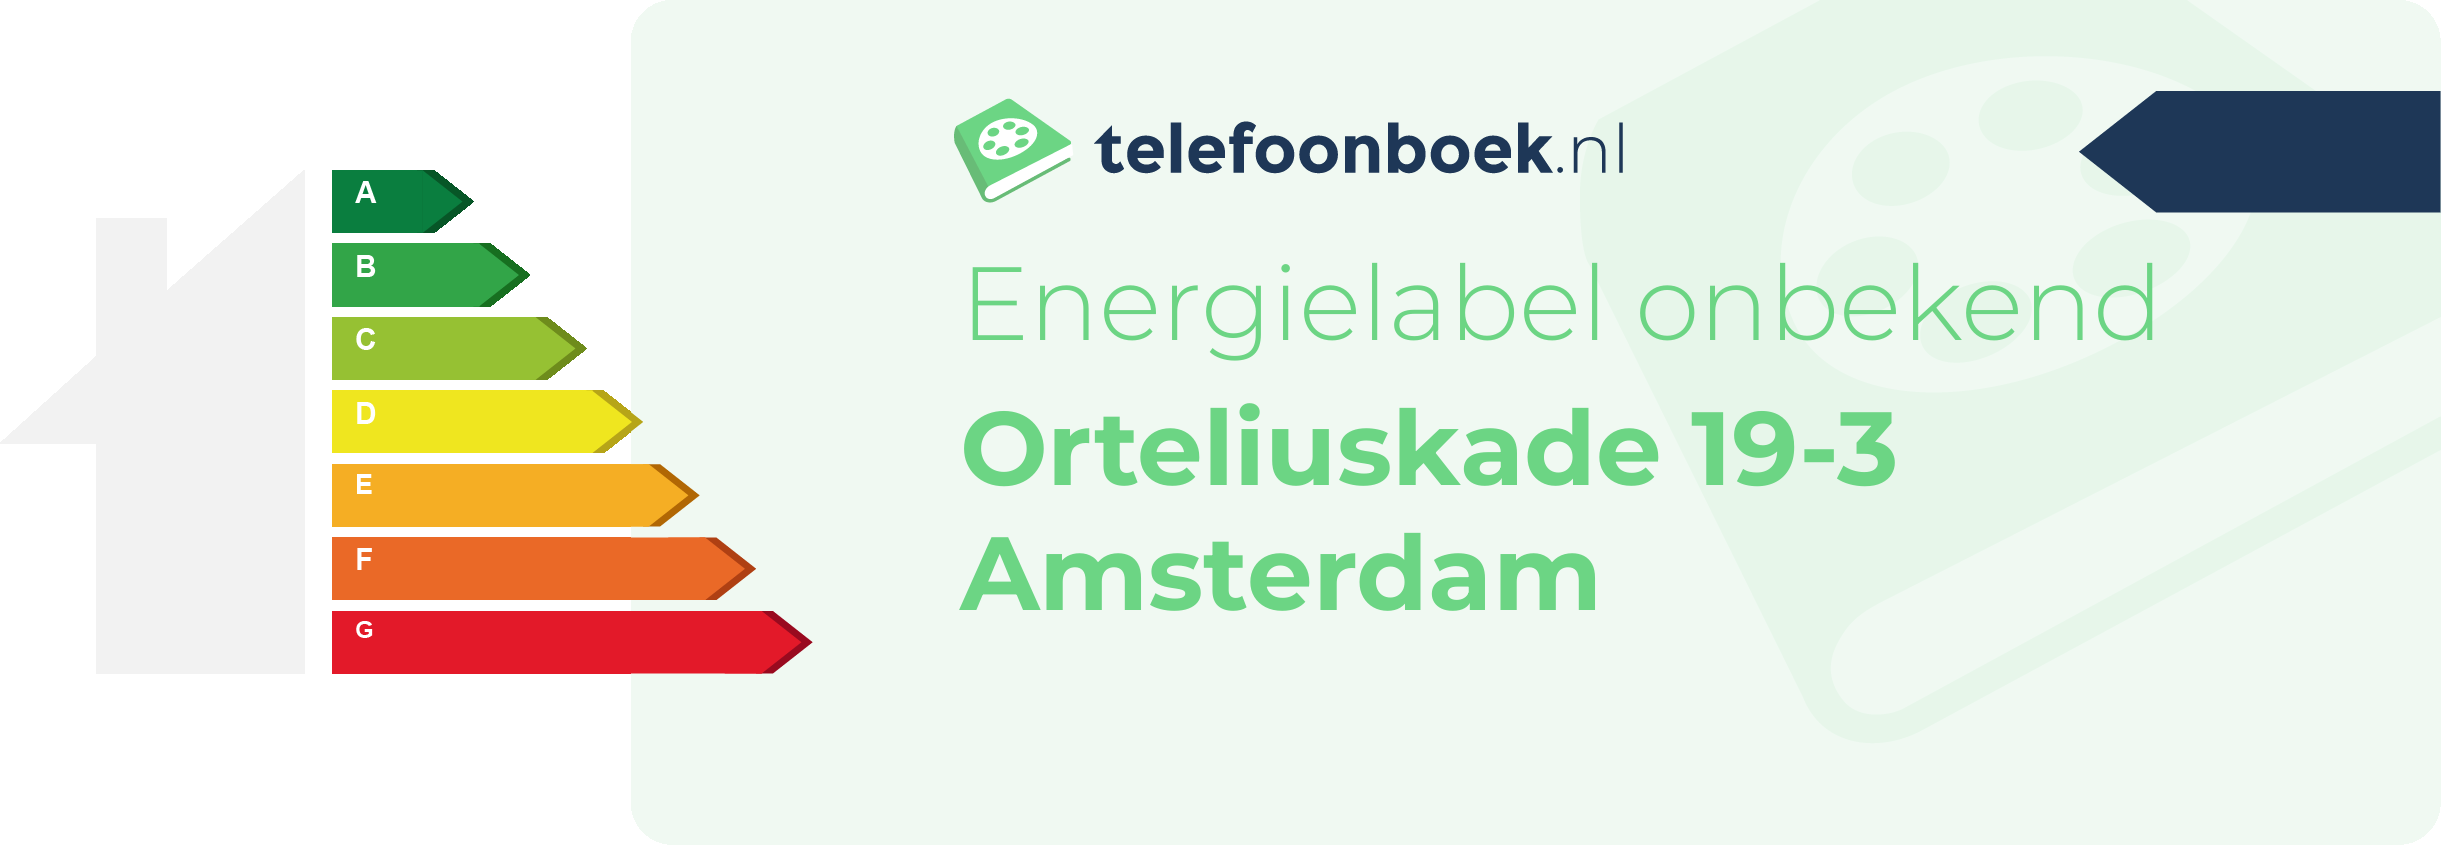 Energielabel Orteliuskade 19-3 Amsterdam